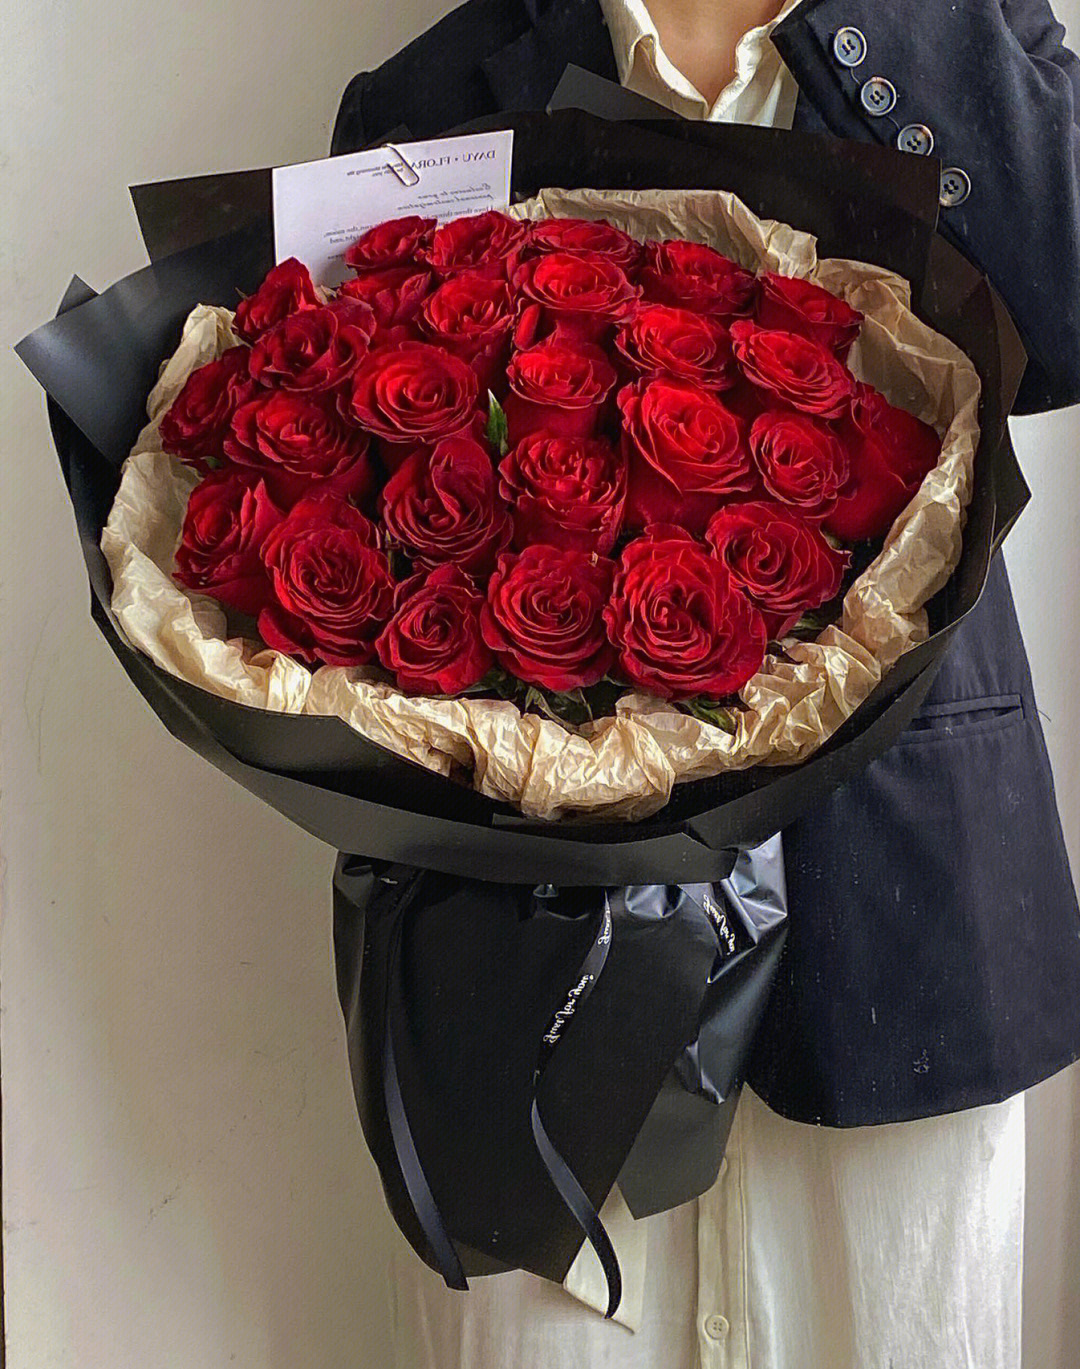 玫瑰花束真实图片韩式图片